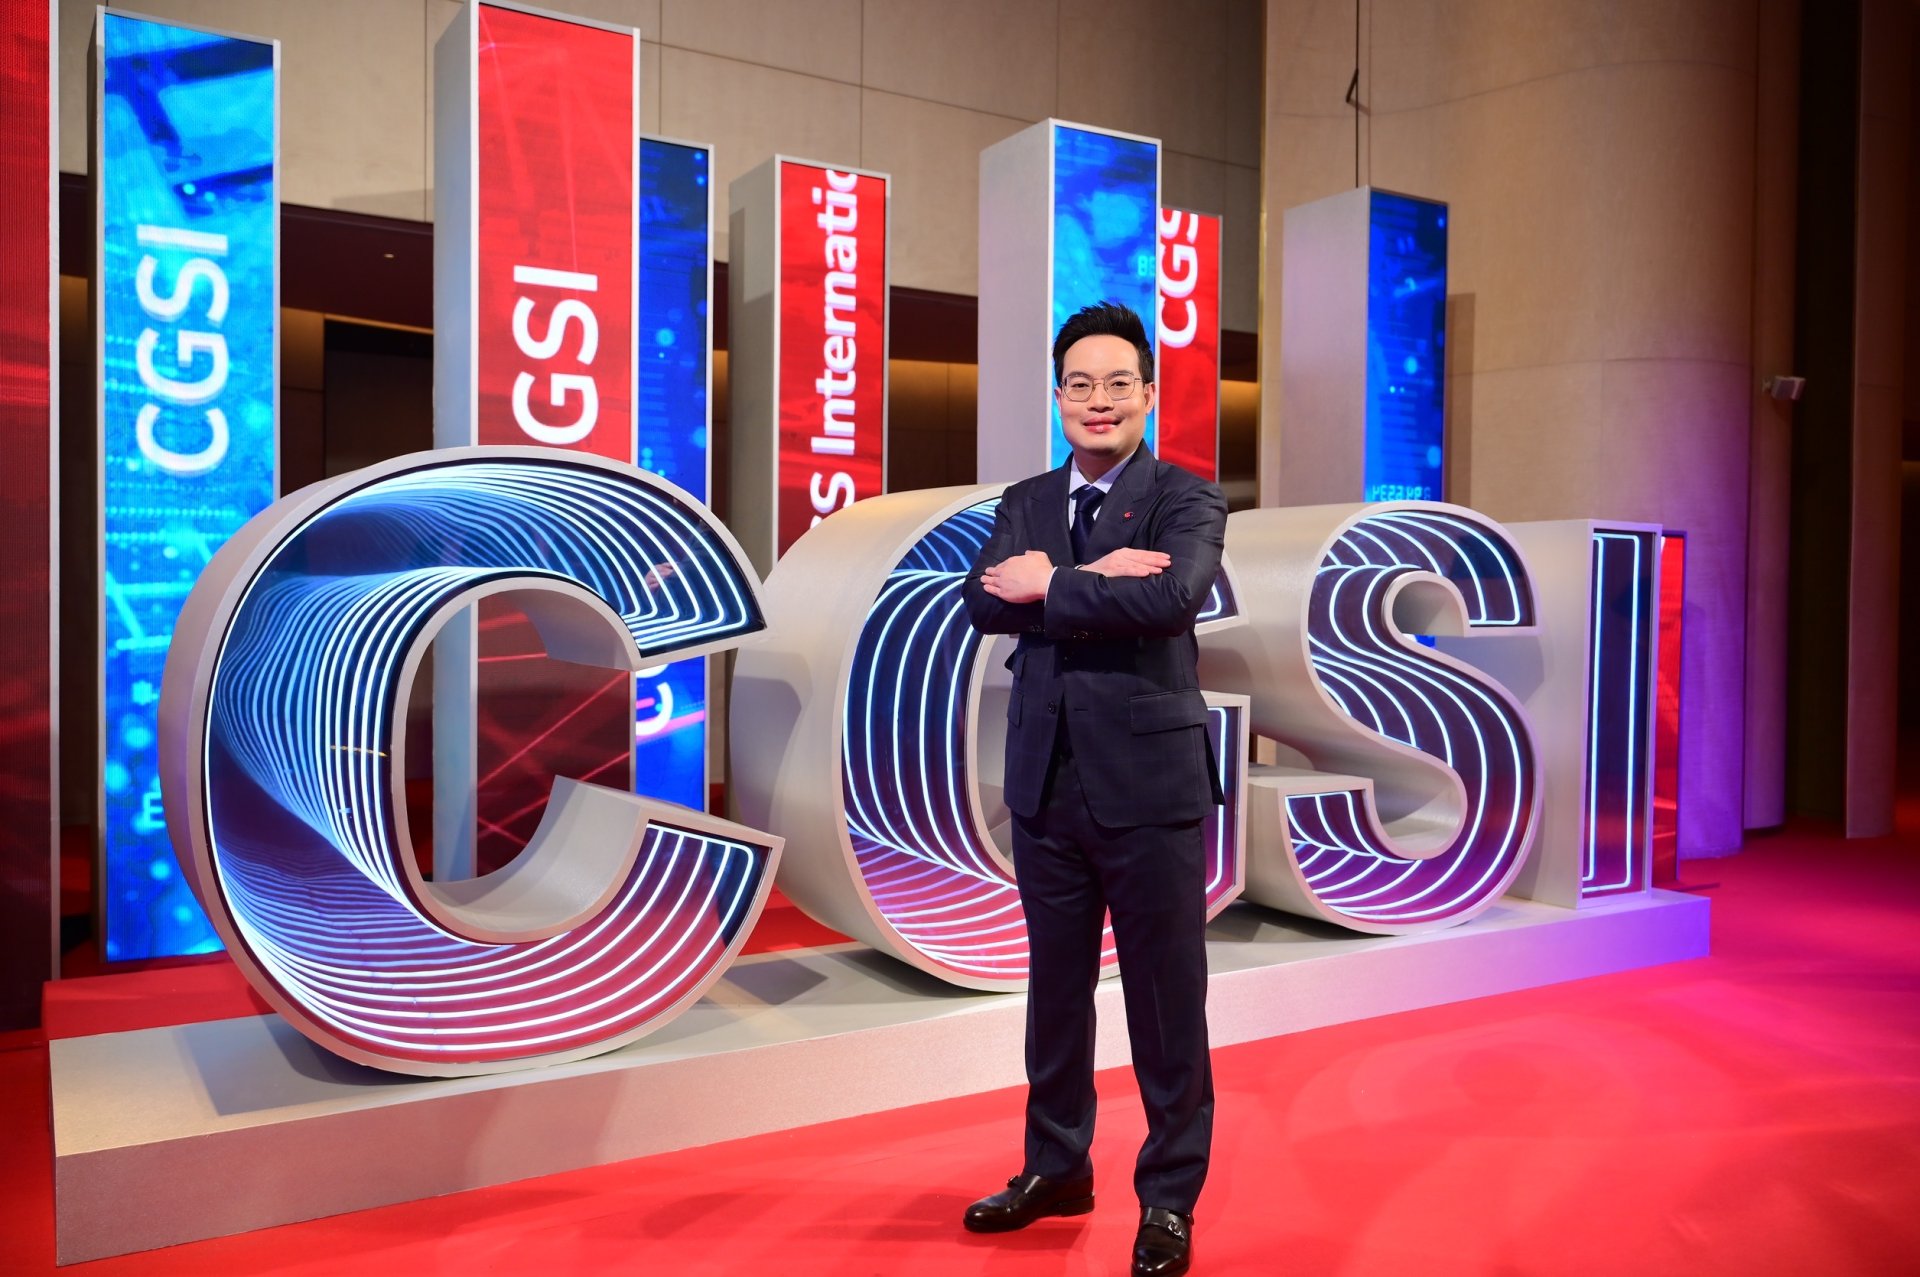 การจัด Brand Launch ของ CGSI เพื่อเชื่อมโยงความร่วมมือระหว่างจีนกับอาเซียน ประสบความสำเร็จอย่างงดงาม